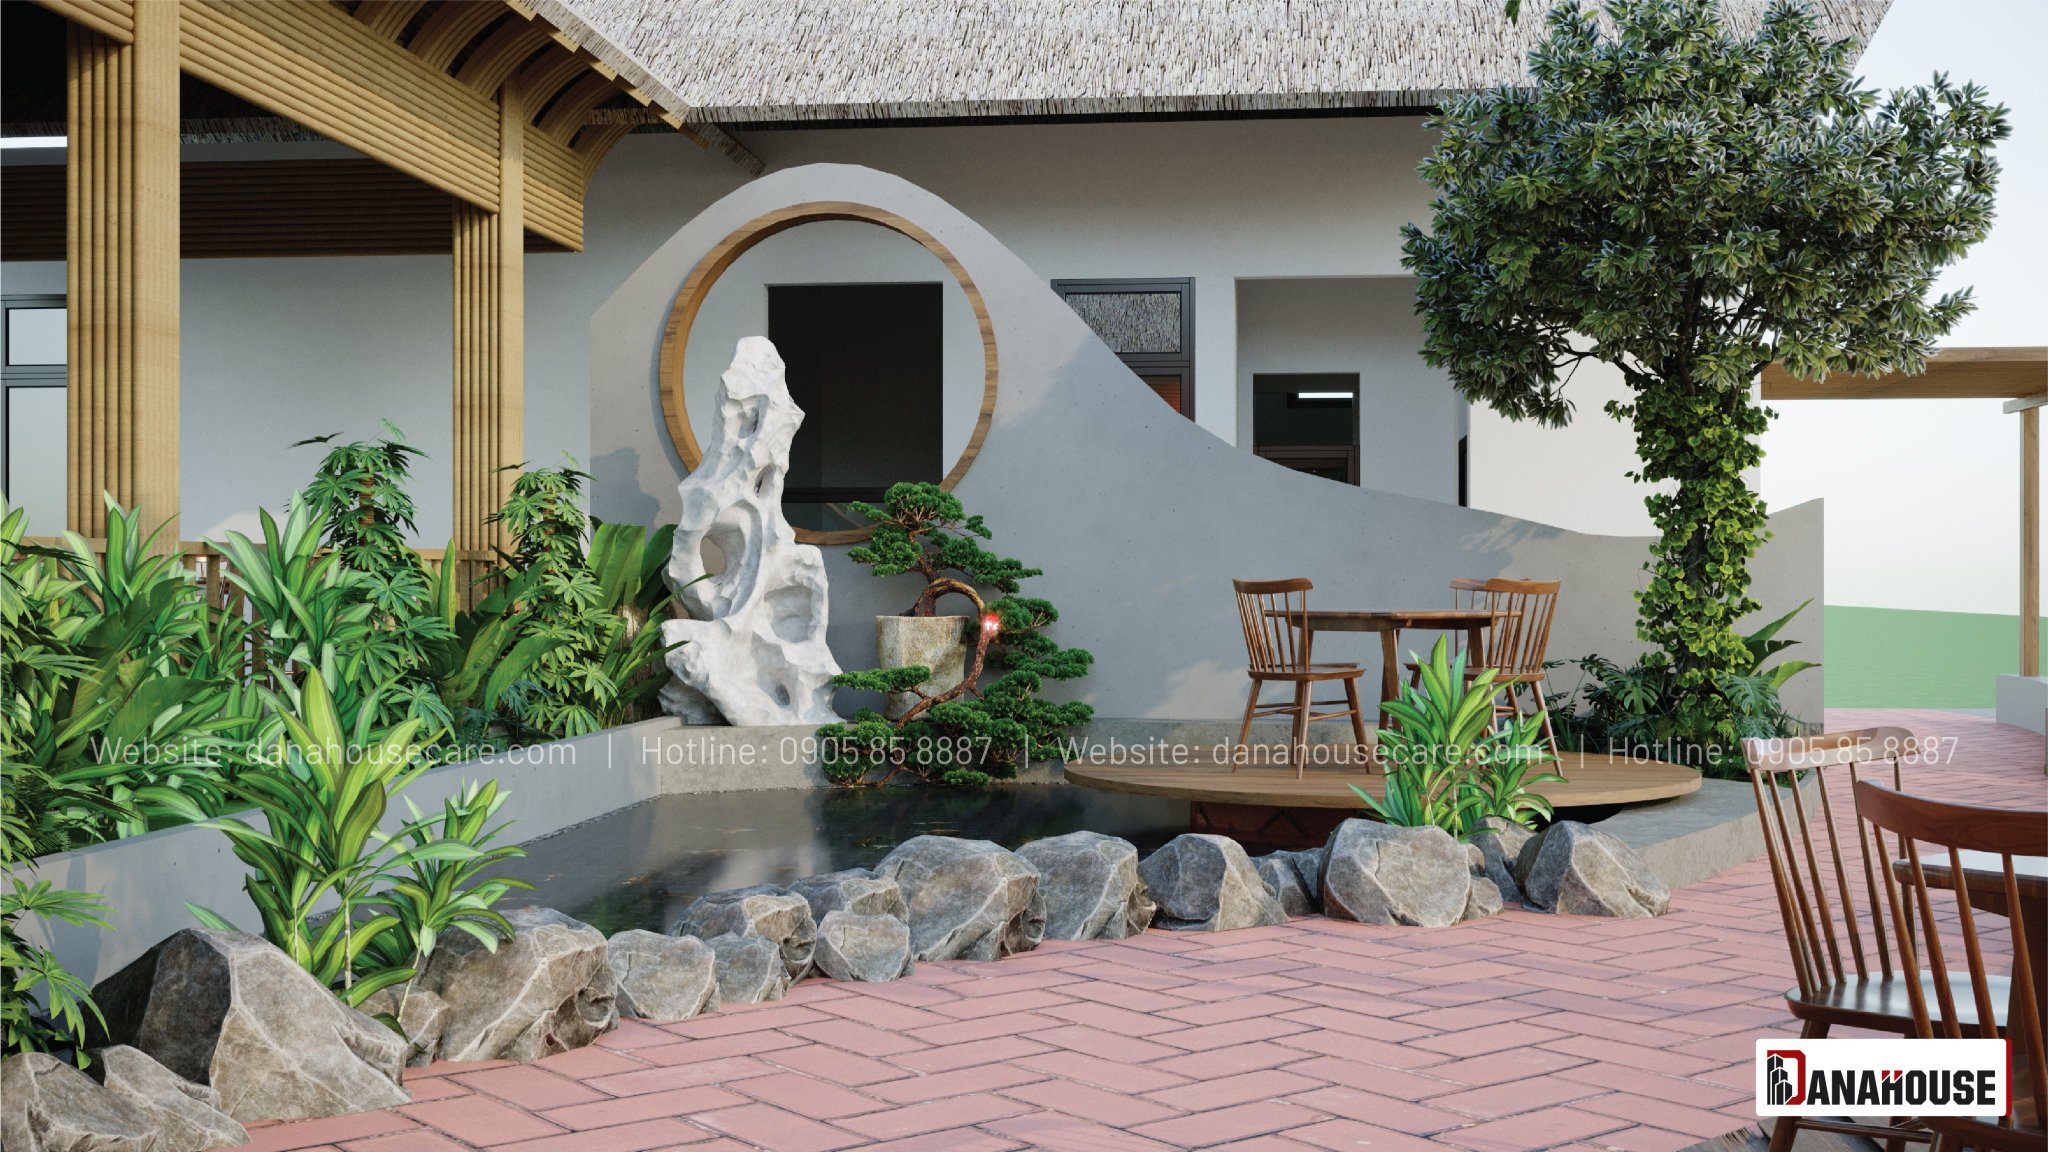 Ý tưởng thiết kế nhà vườn Đà Nẵng theo phong cách Nhật Bản mang đến không gian thanh bình, an nhiên